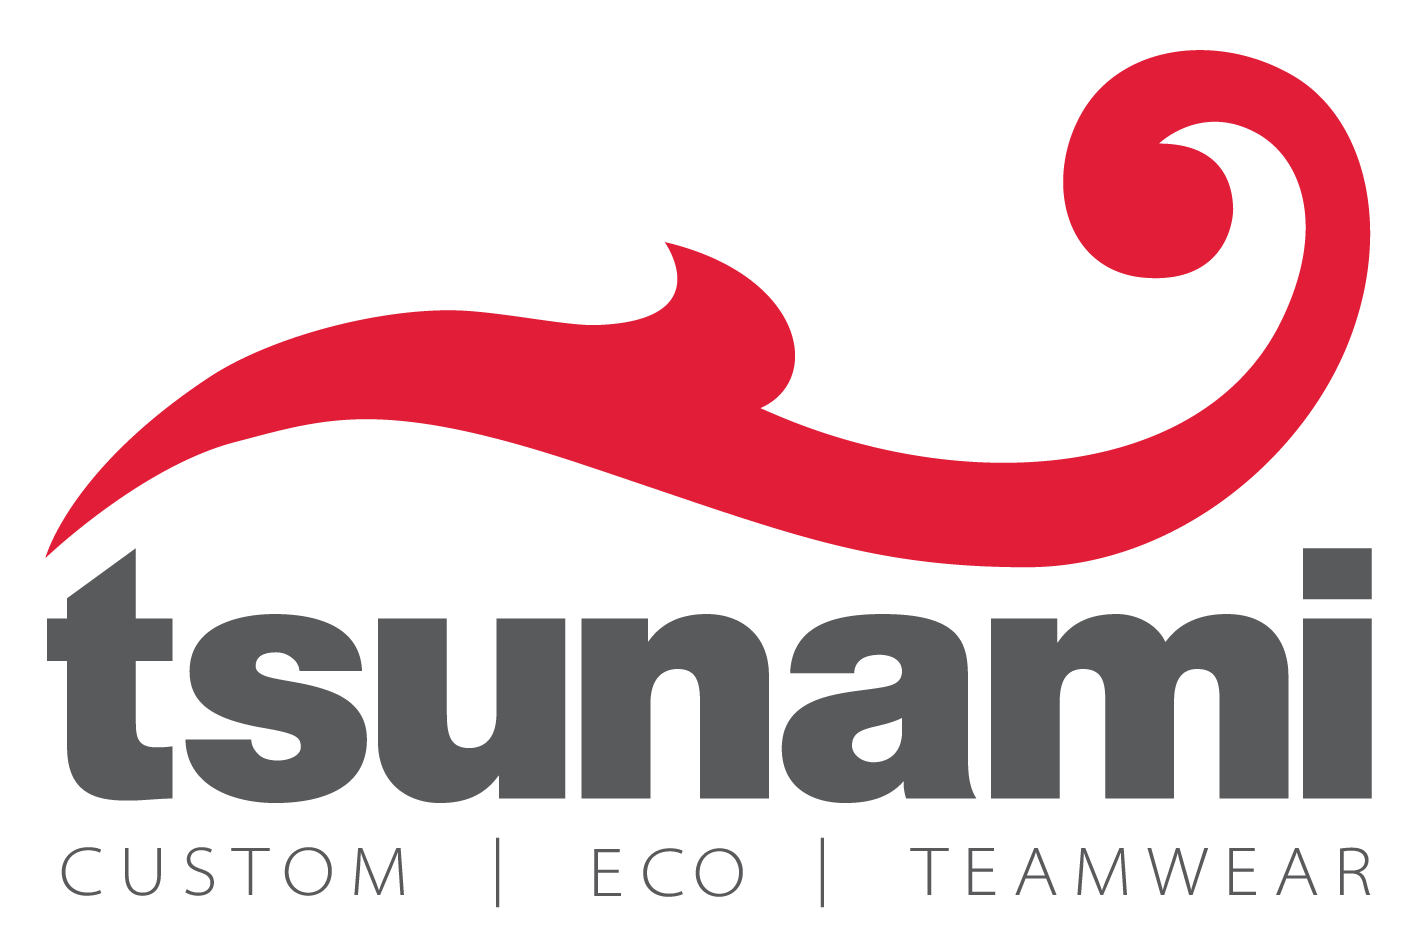 TSUNAMI